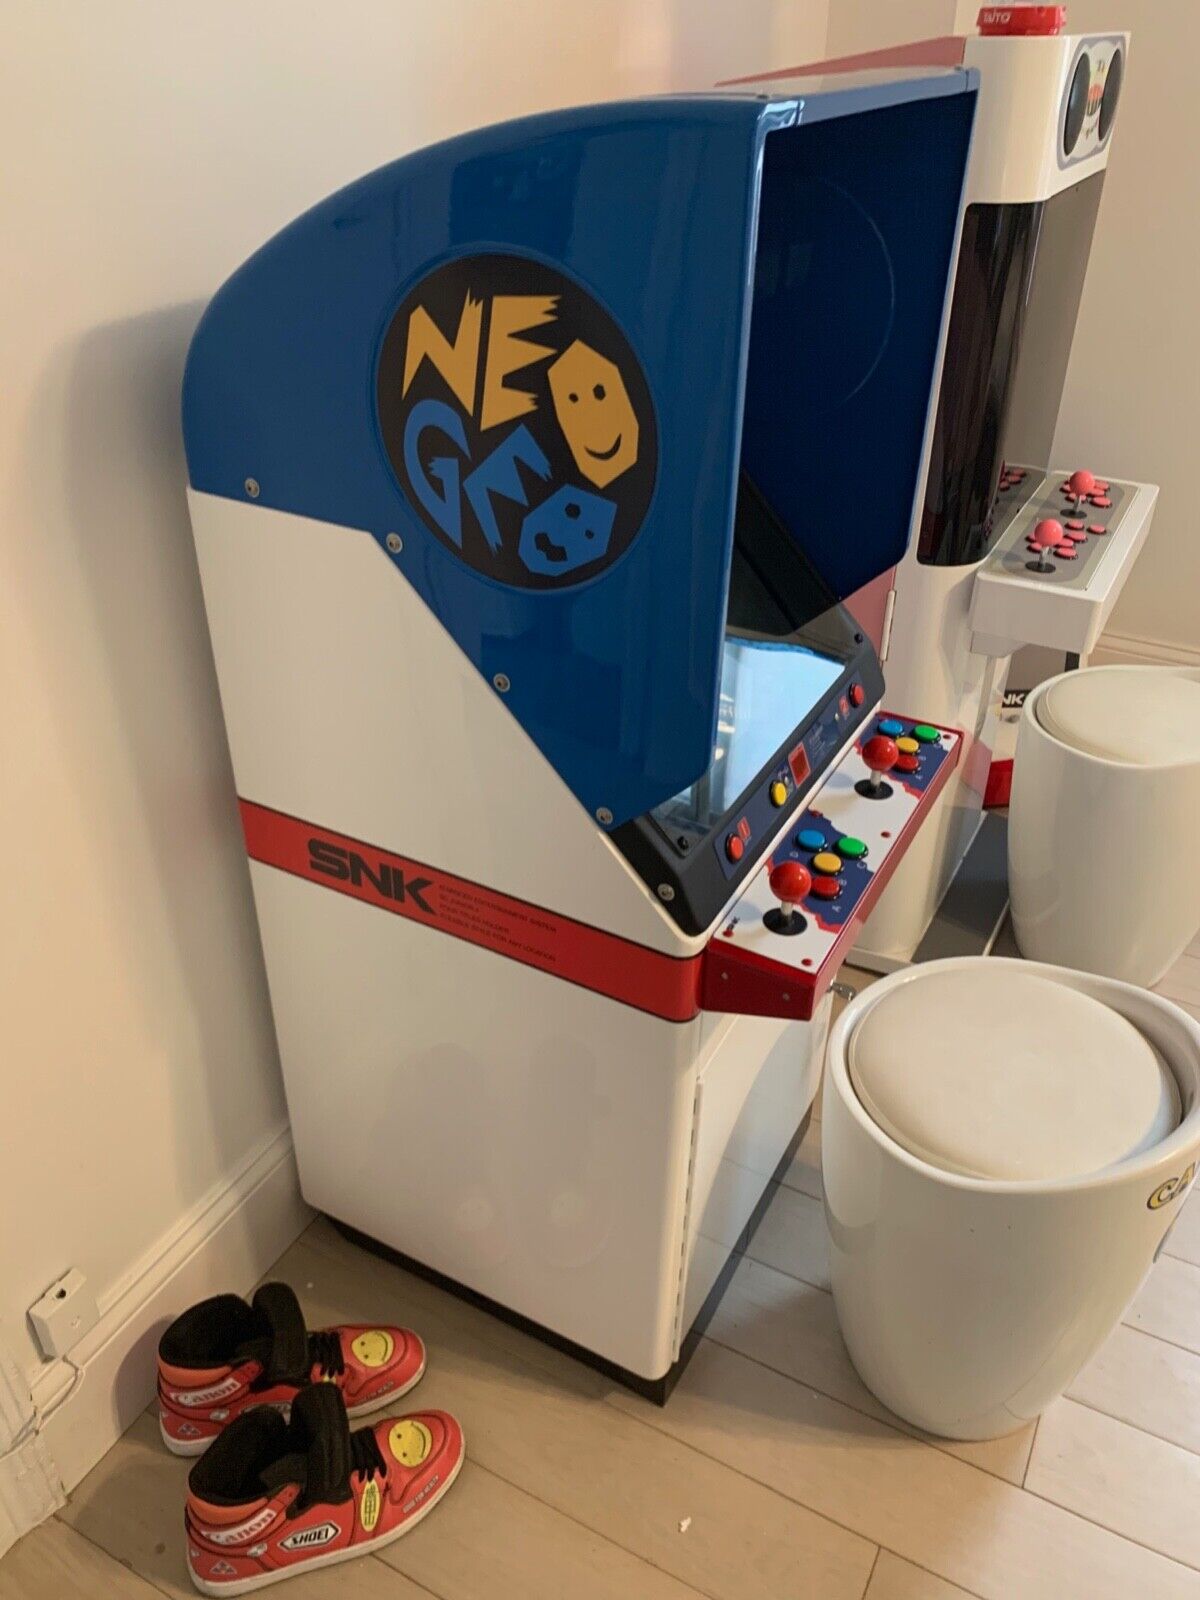 Neo Geo SC19 Arcade Cabinet Restored